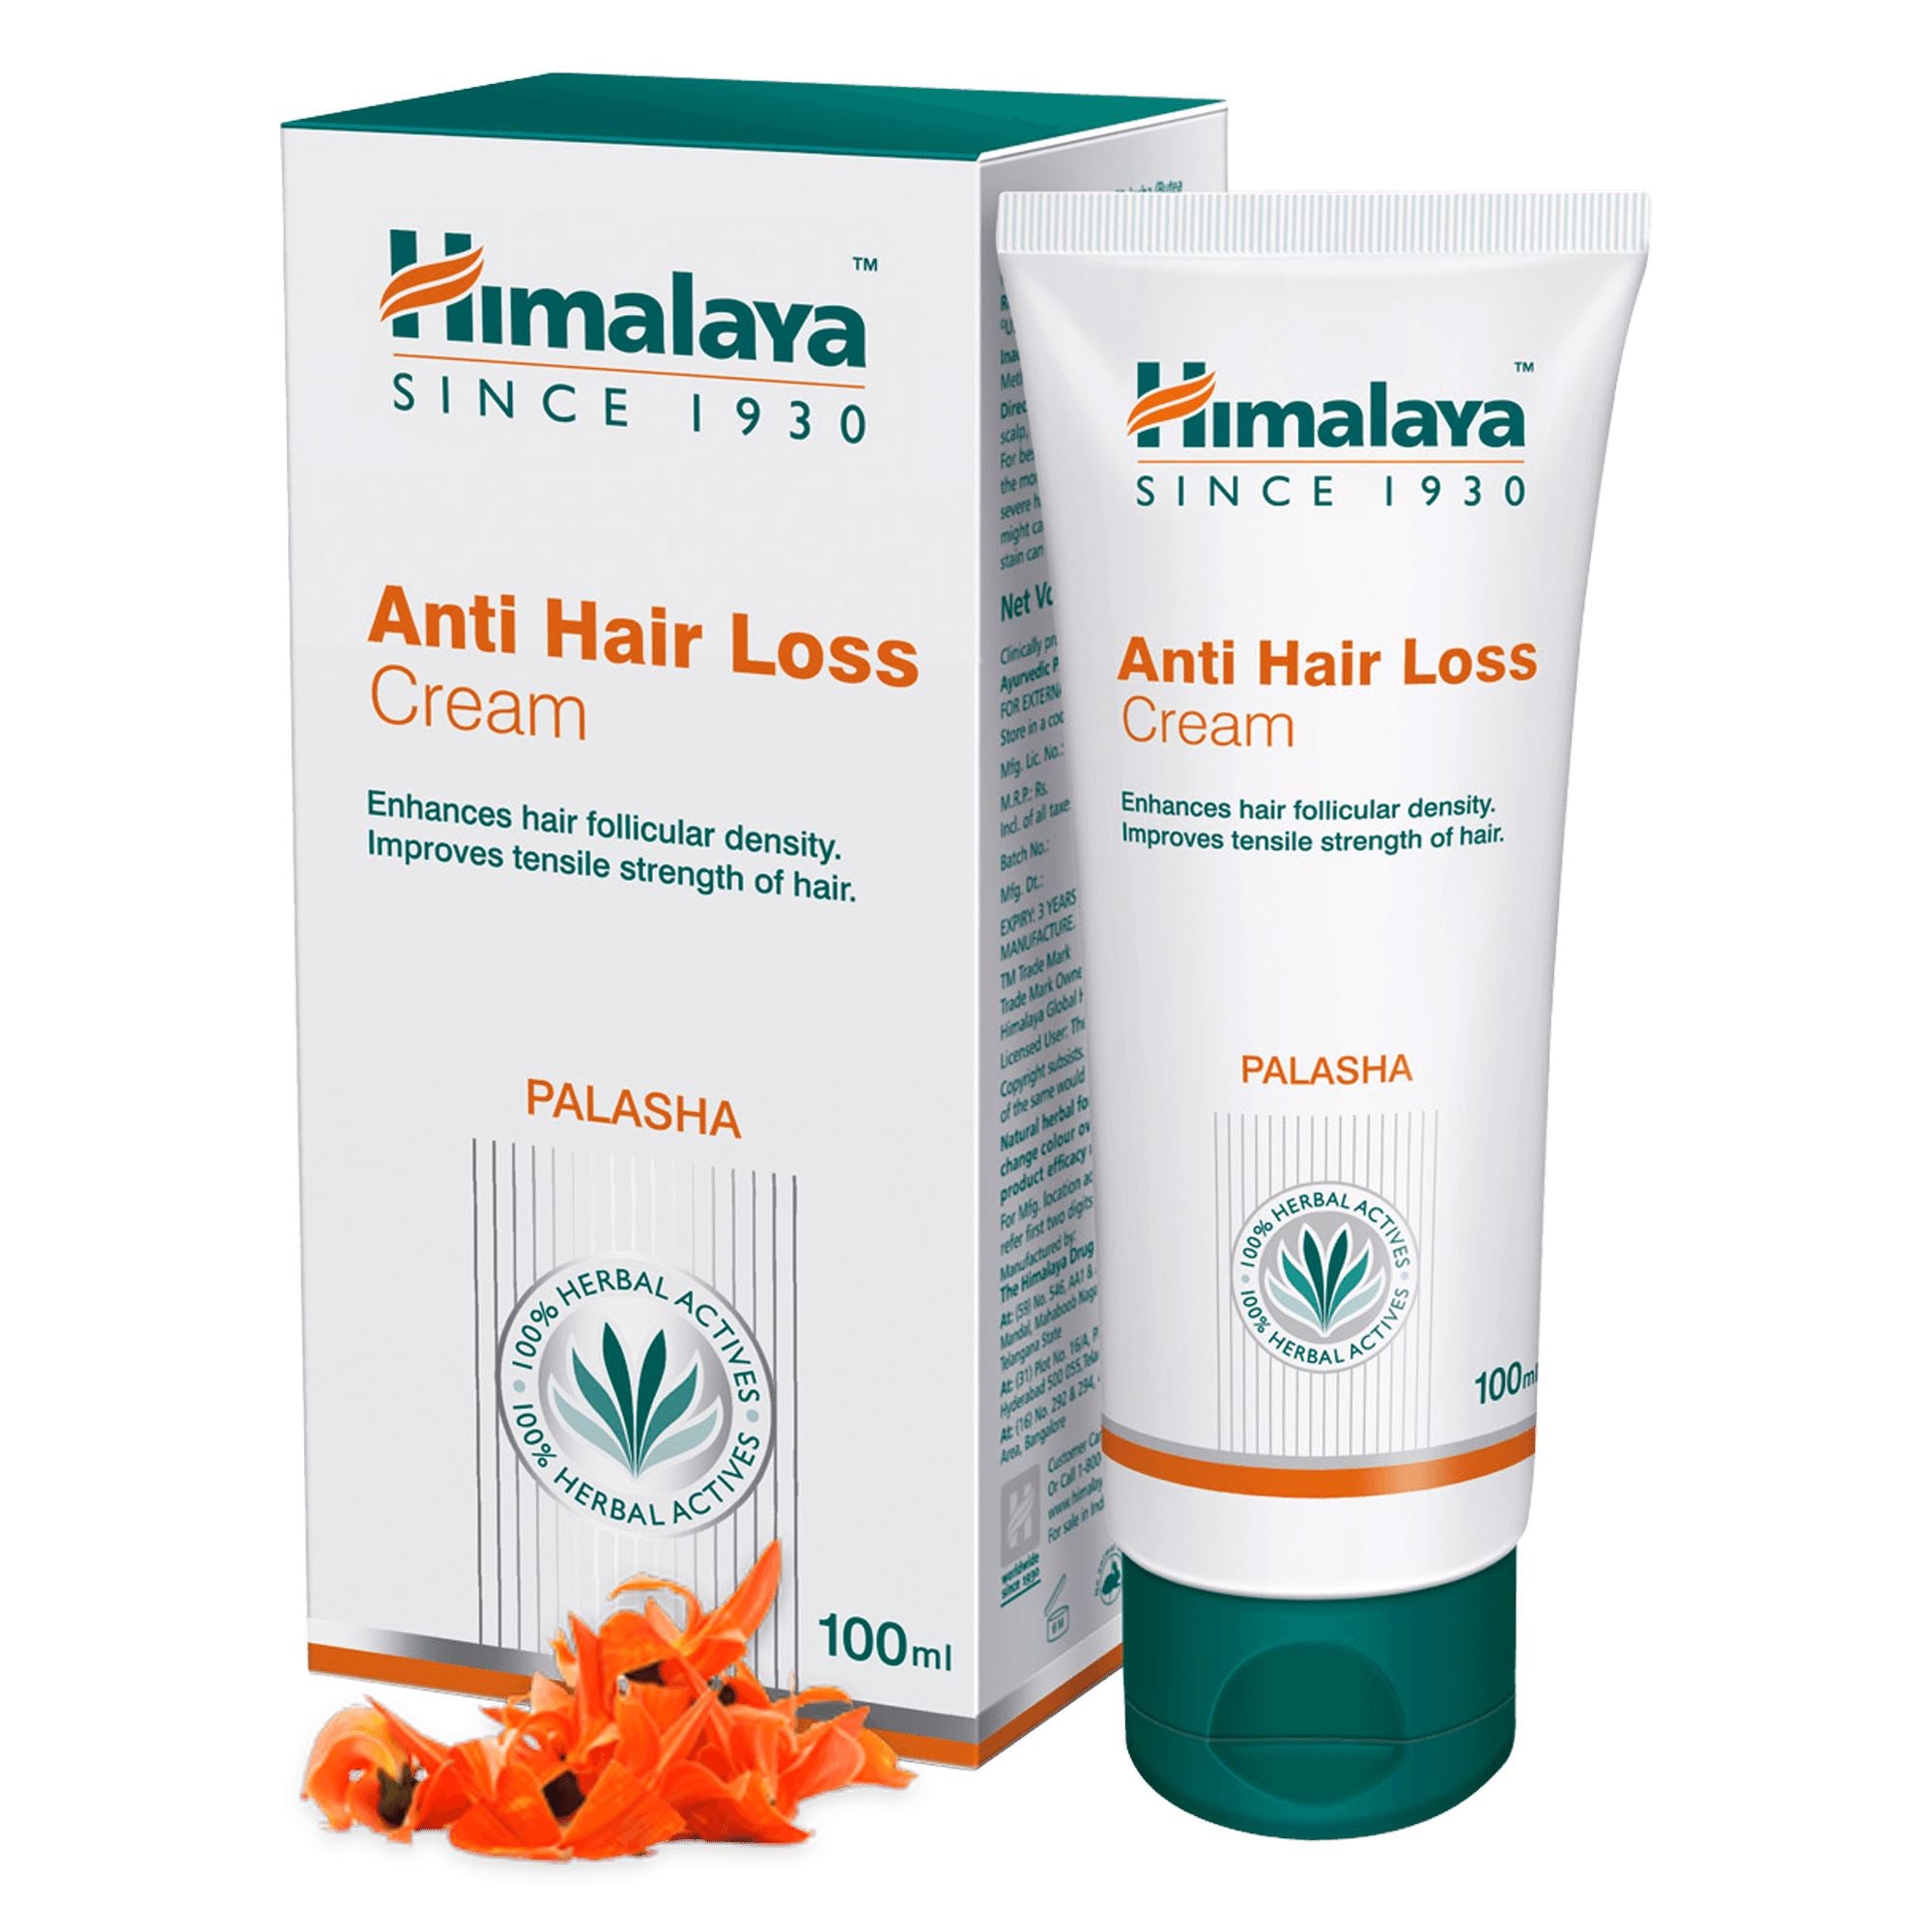 Himalaya Anti Hair Loss Cream 100ml - Promotes hair growth and controls hair fall